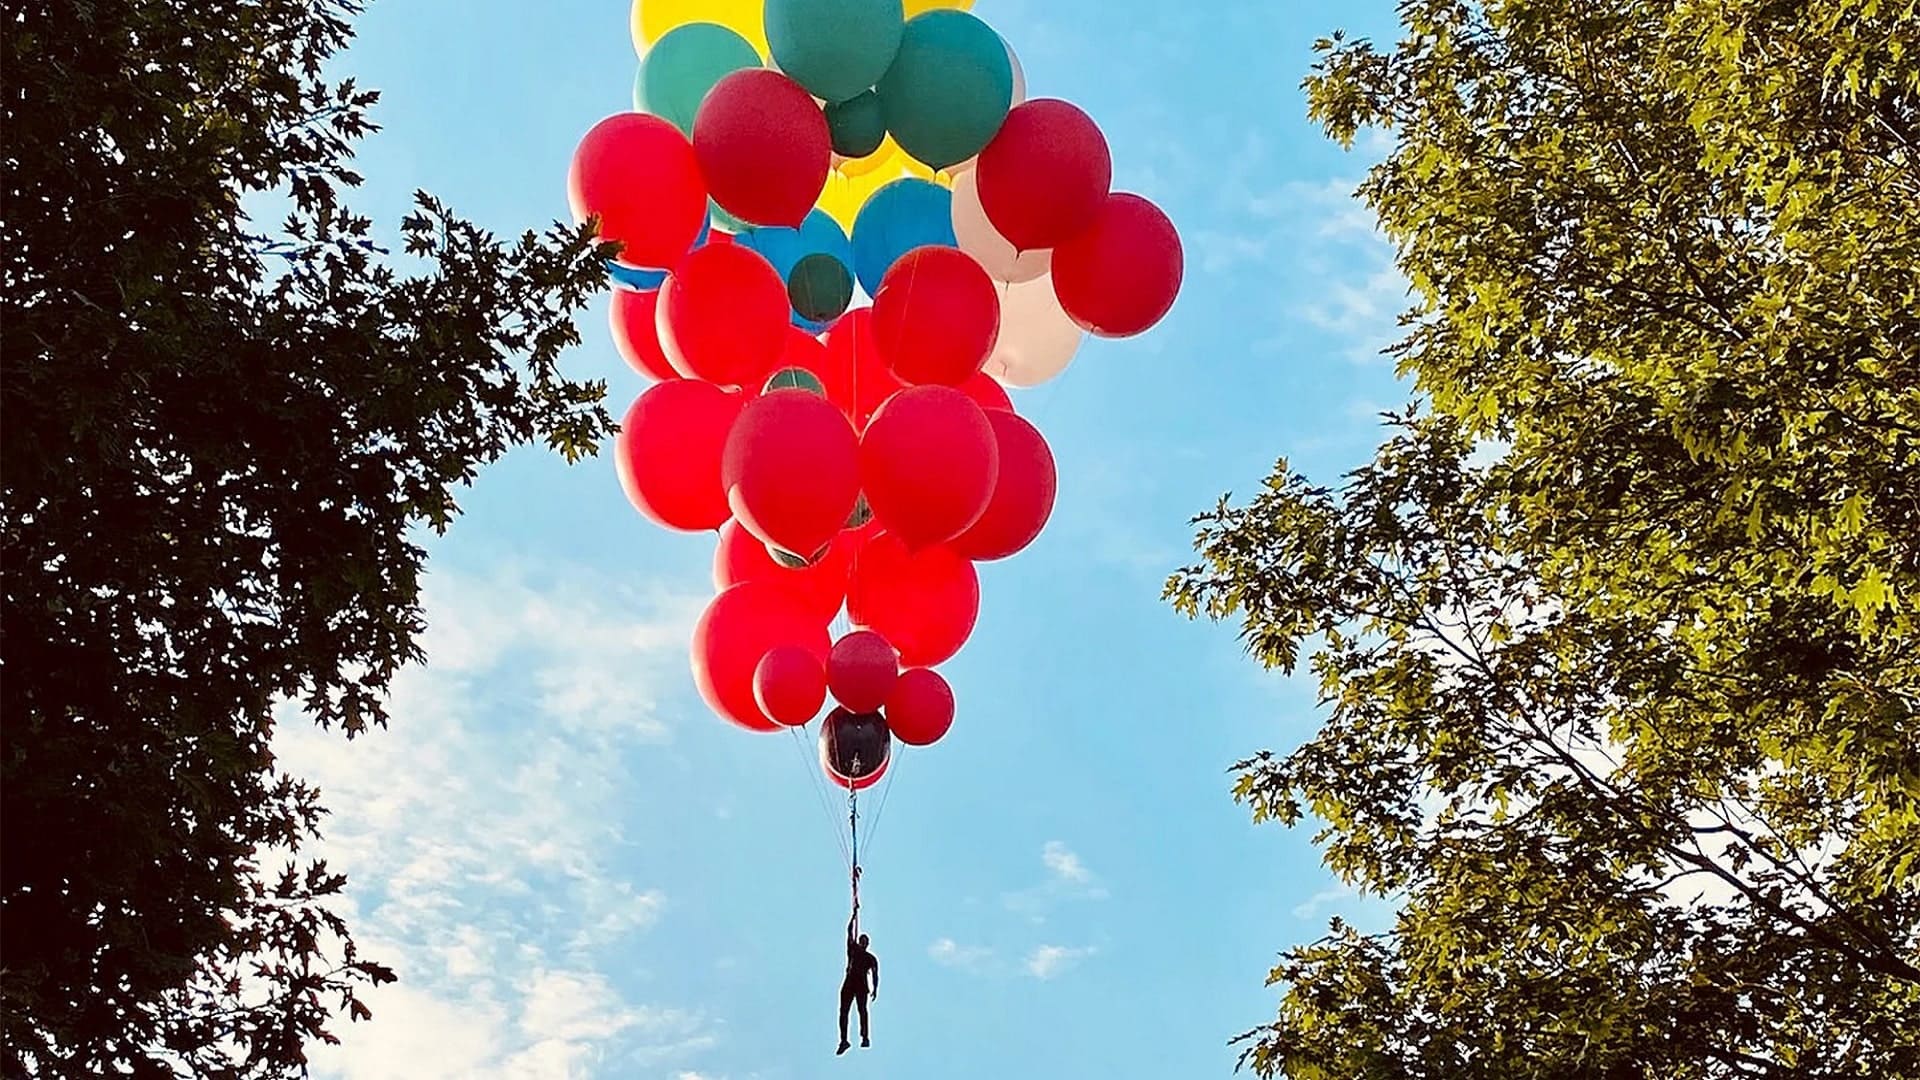 (En vivo) El mago David Blaine flotará con globos sobre Nueva York